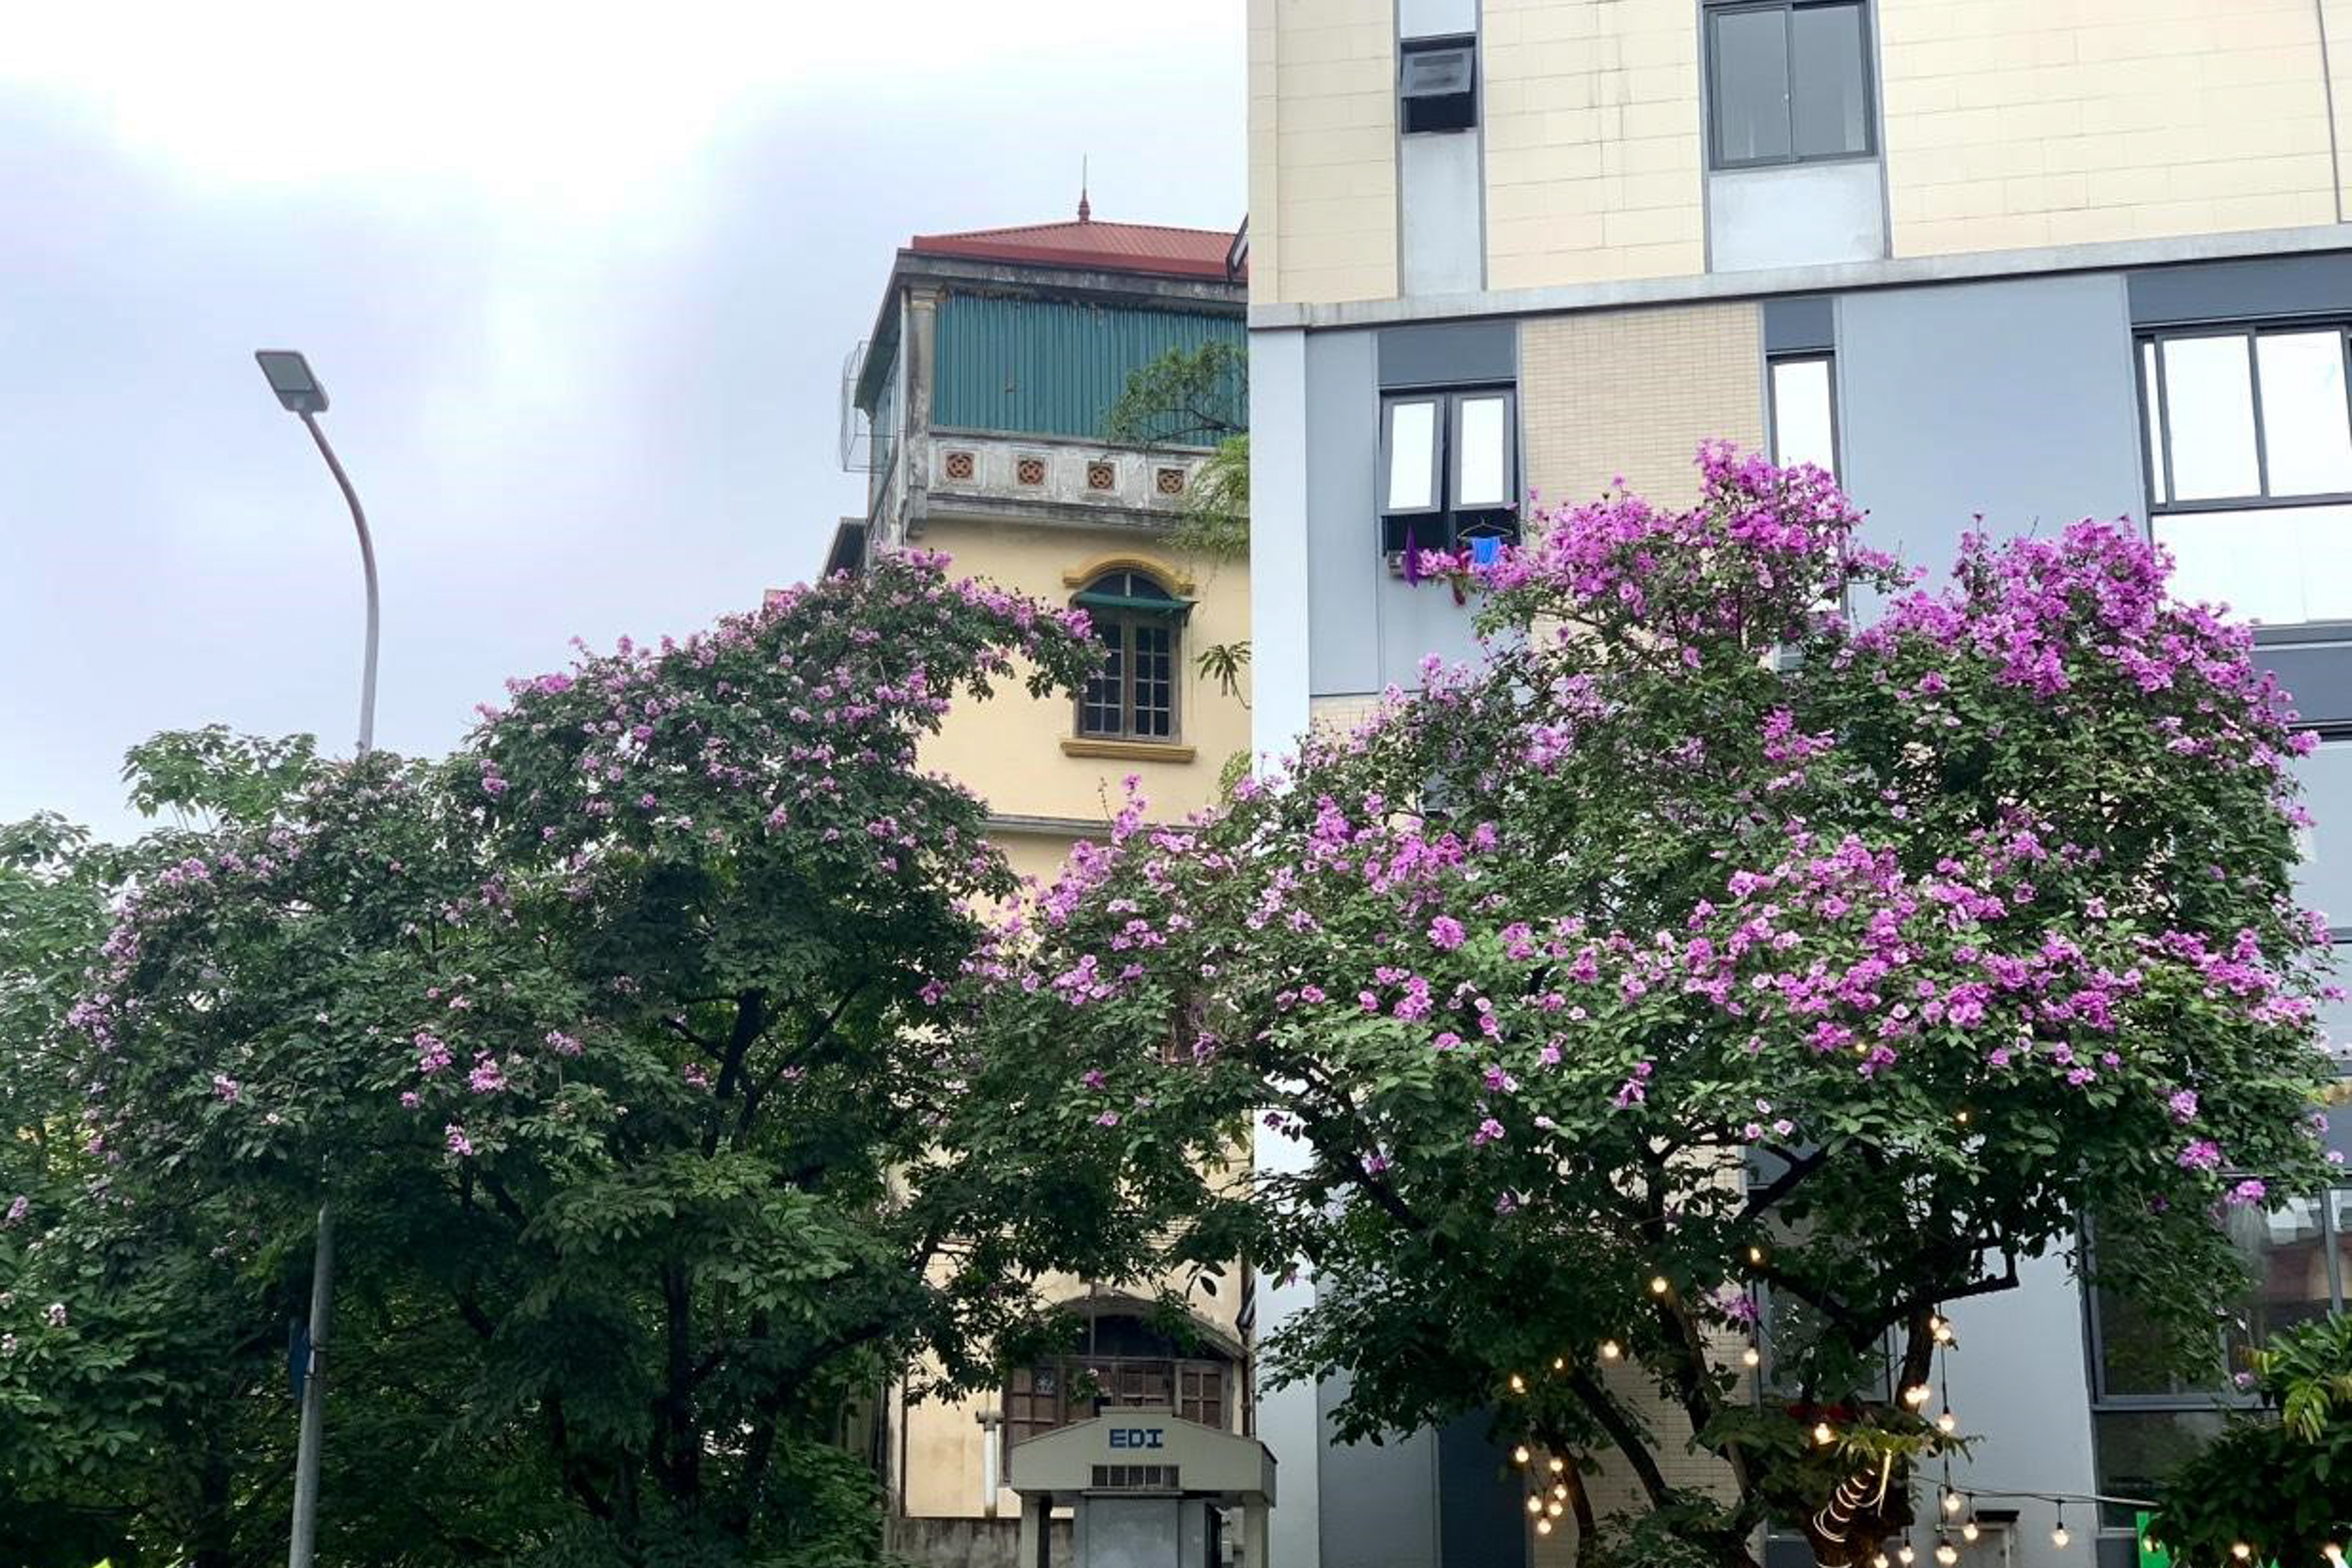 Vào mỗi dịp đầu hè từ tháng 5 đến tháng 6, dạo quanh một vòng phố phường, ta dễ dàng bắt gặp những cây bằng lăng tím nở rộ, điểm tô thêm vẻ thơ mộng, lãng mạn cho từng góc phố Hà Nội.